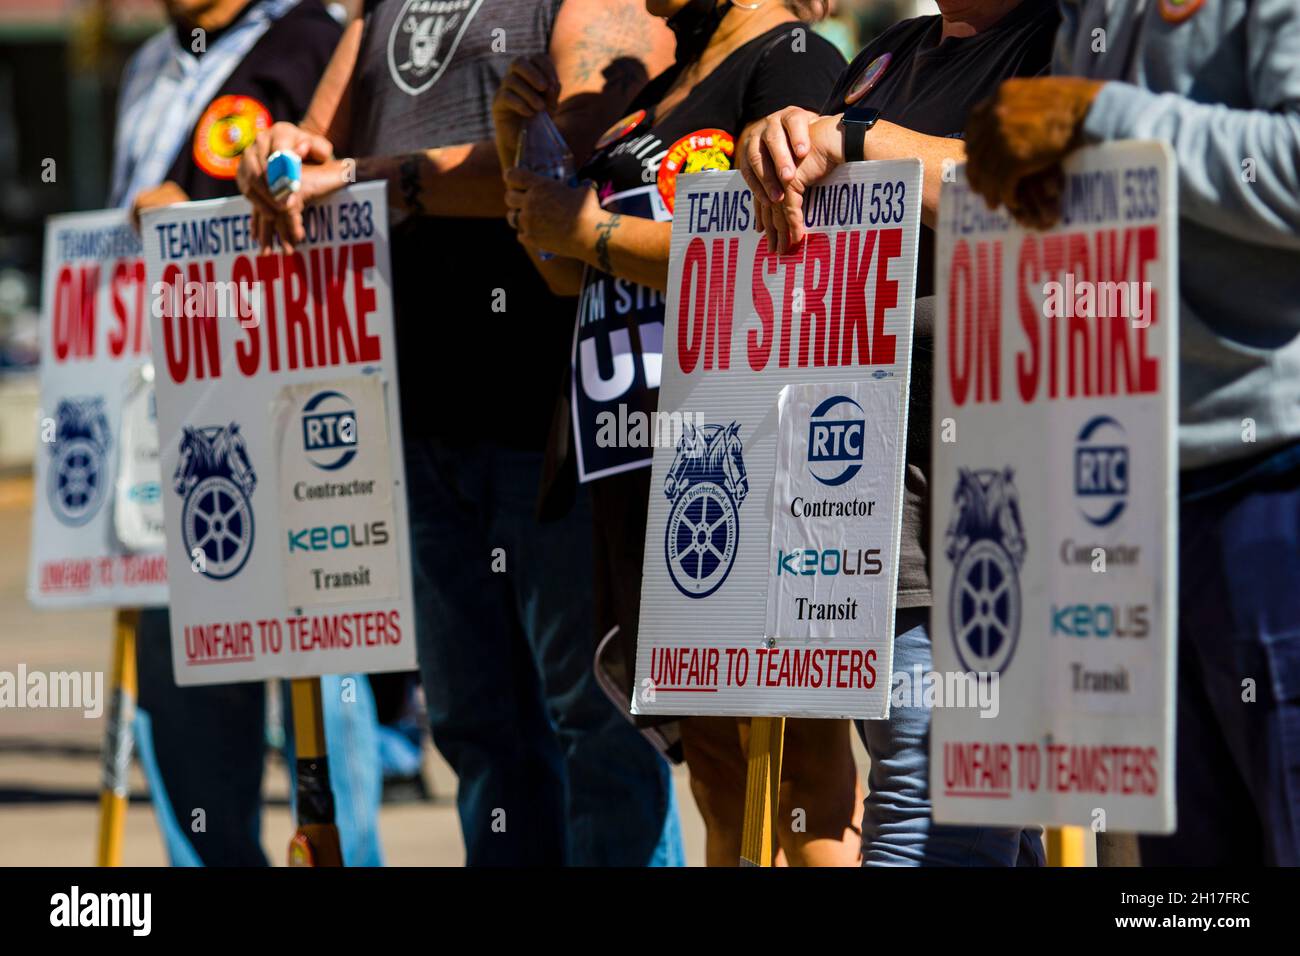 Gewerkschaftsmitglieder streiken mit Plakaten, die ihre Meinung bei einem marsch ausdrücken.Gewerkschaftsmitglieder und Gemeindemitglieder marschieren aus Protest gegen das Keolis-Management. Die lokalen Teamster 533 streiken weiterhin, nachdem die Verhandlungen gescheitert sind. (Foto von Ty O'Neil / SOPA Images/Sipa USA) Stockfoto